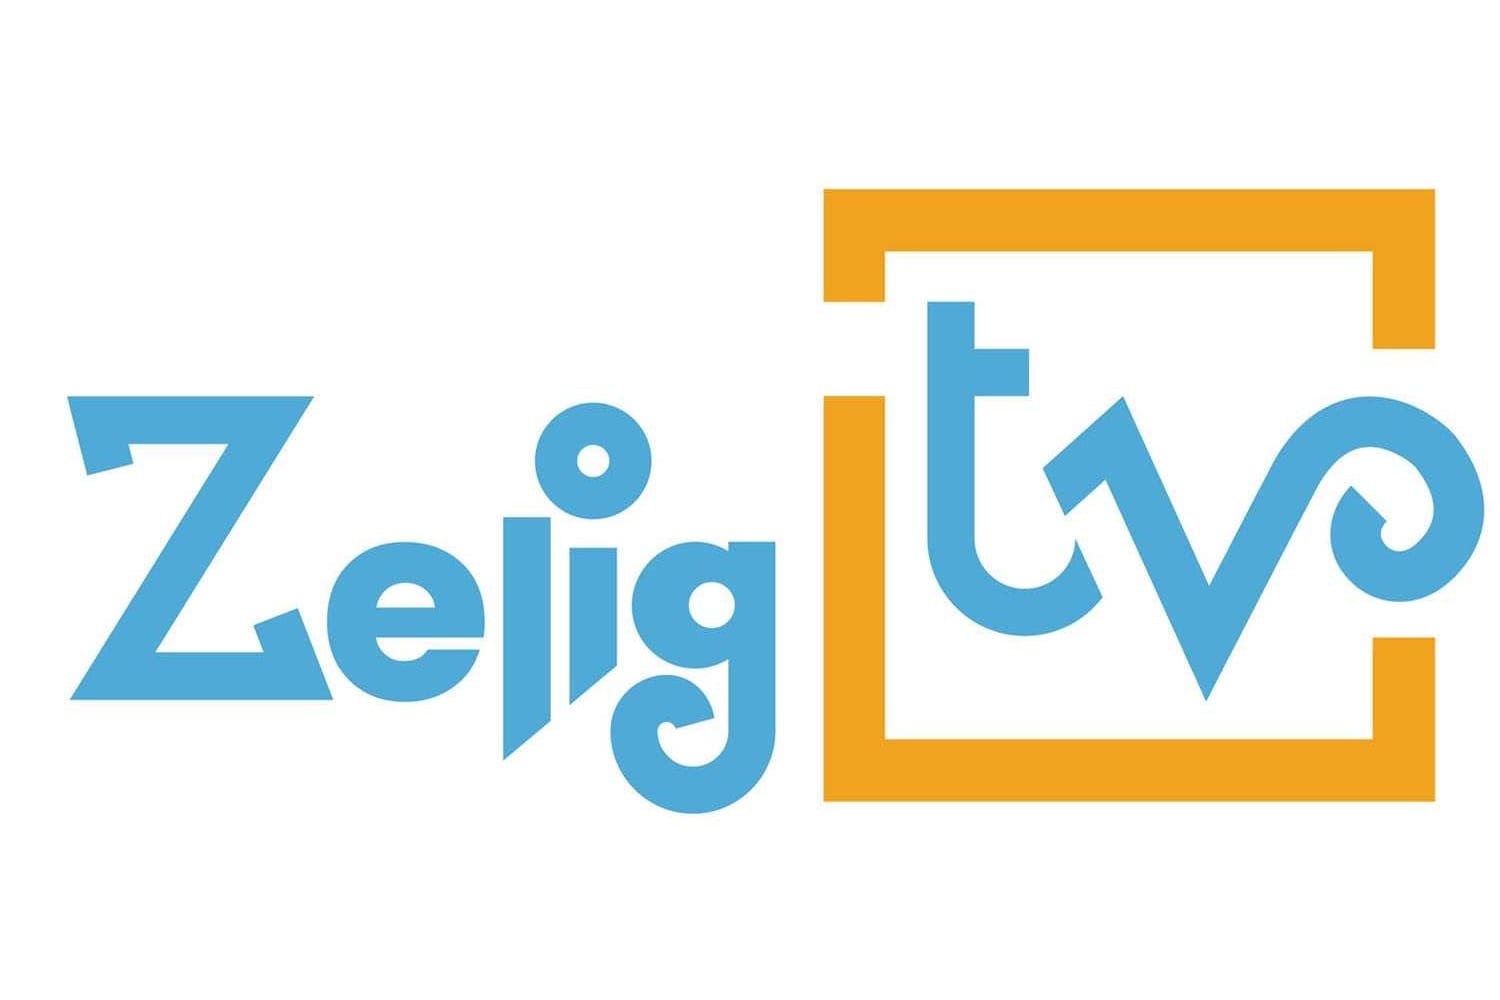 Nasce Zelig TV su Amazon Prime Video Channels. Dopo la chiusura nel 2020, torna in streaming con un nuovo canale dedicato alla comicità